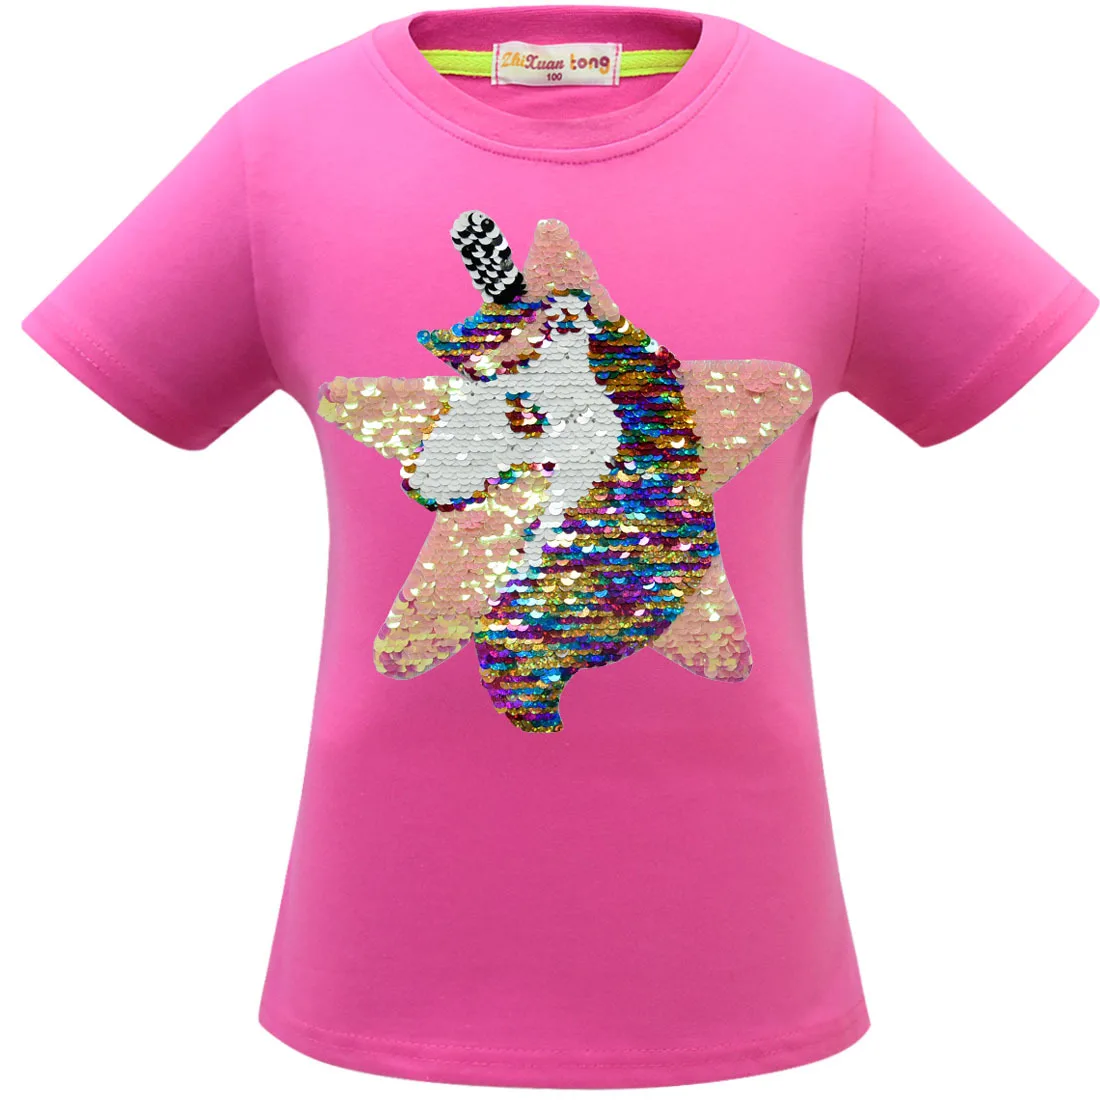 Новая розовая футболка с блестками для девочек детские двухсторонние футболки с единорогом и звездами детские топы, футболки с блестками